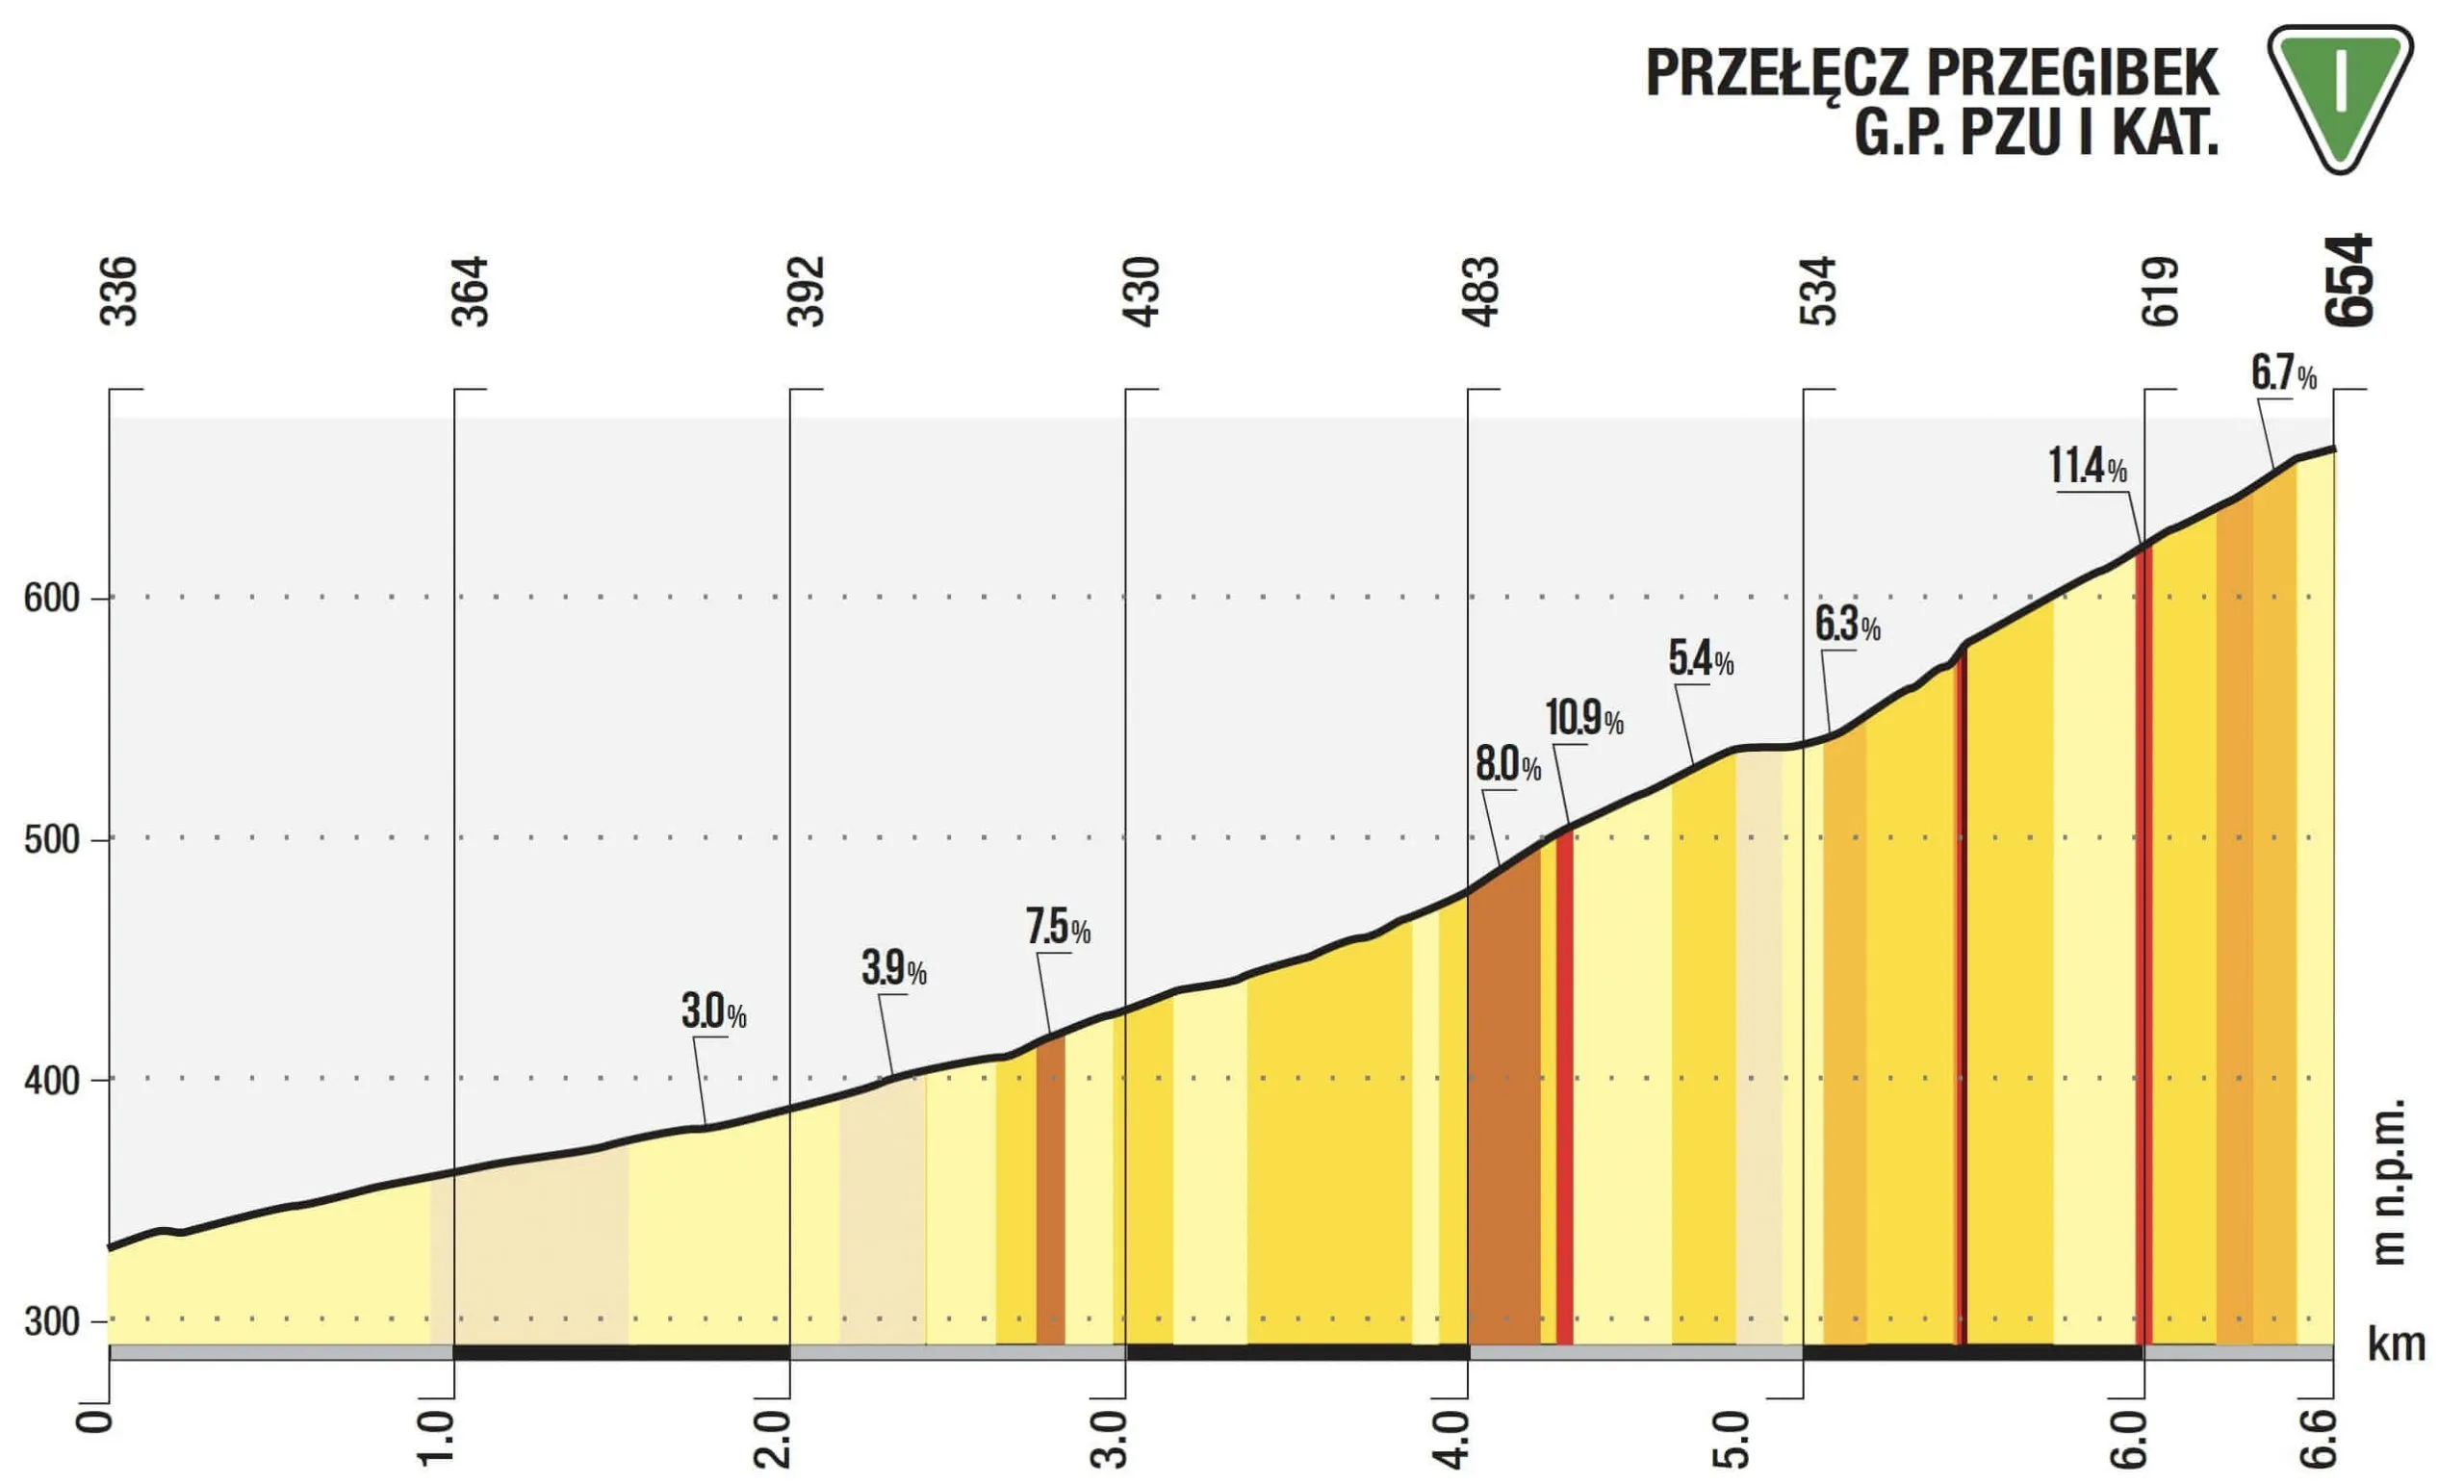 Przełęcz Przegibek - Premia Górska I Kategorii Tour de Pologne 2021